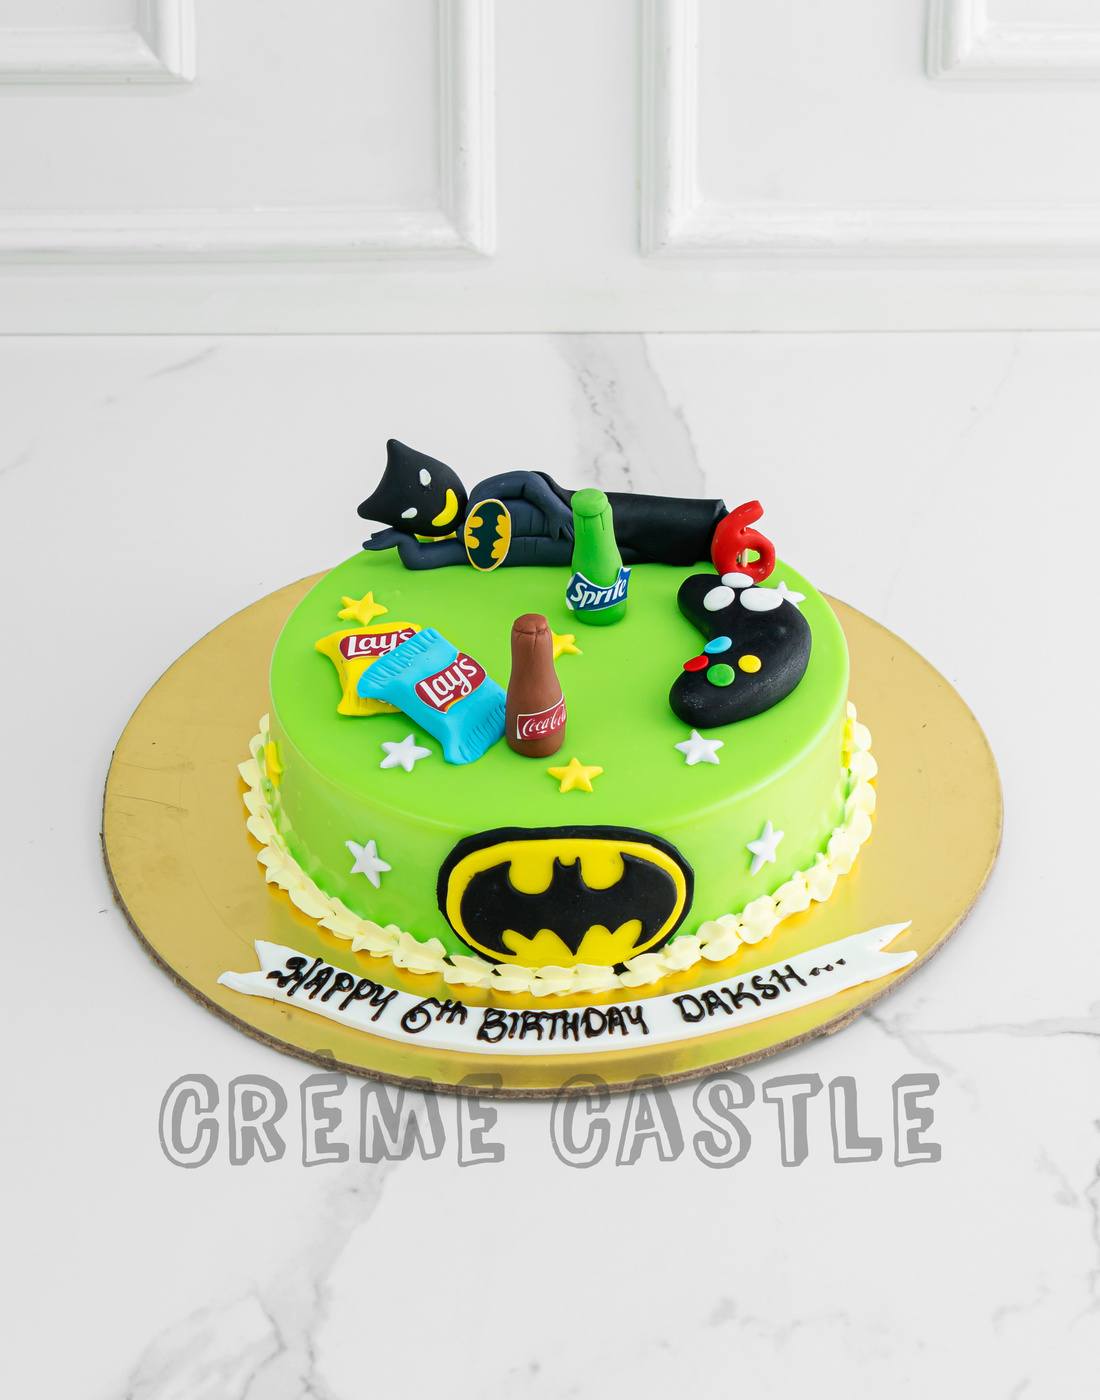 Batman and Chill - Creme Castle